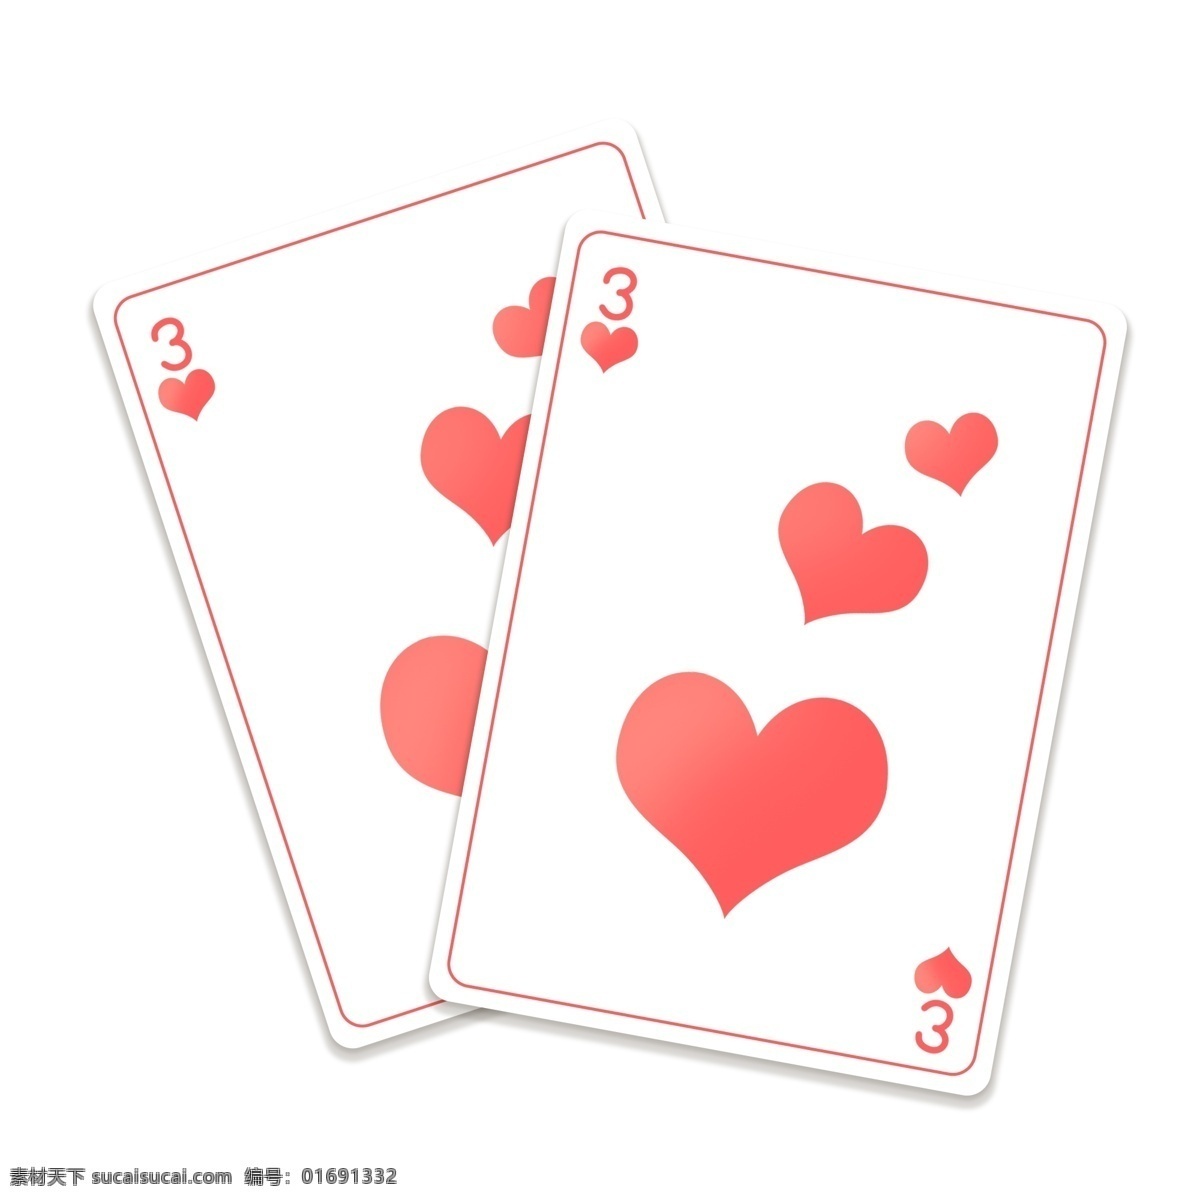 红色 爱心 扑克牌 打牌 扑克 打扑克 打扑克牌 游戏 娱乐 娱乐游戏 红色爱心 数字 阿拉伯数字